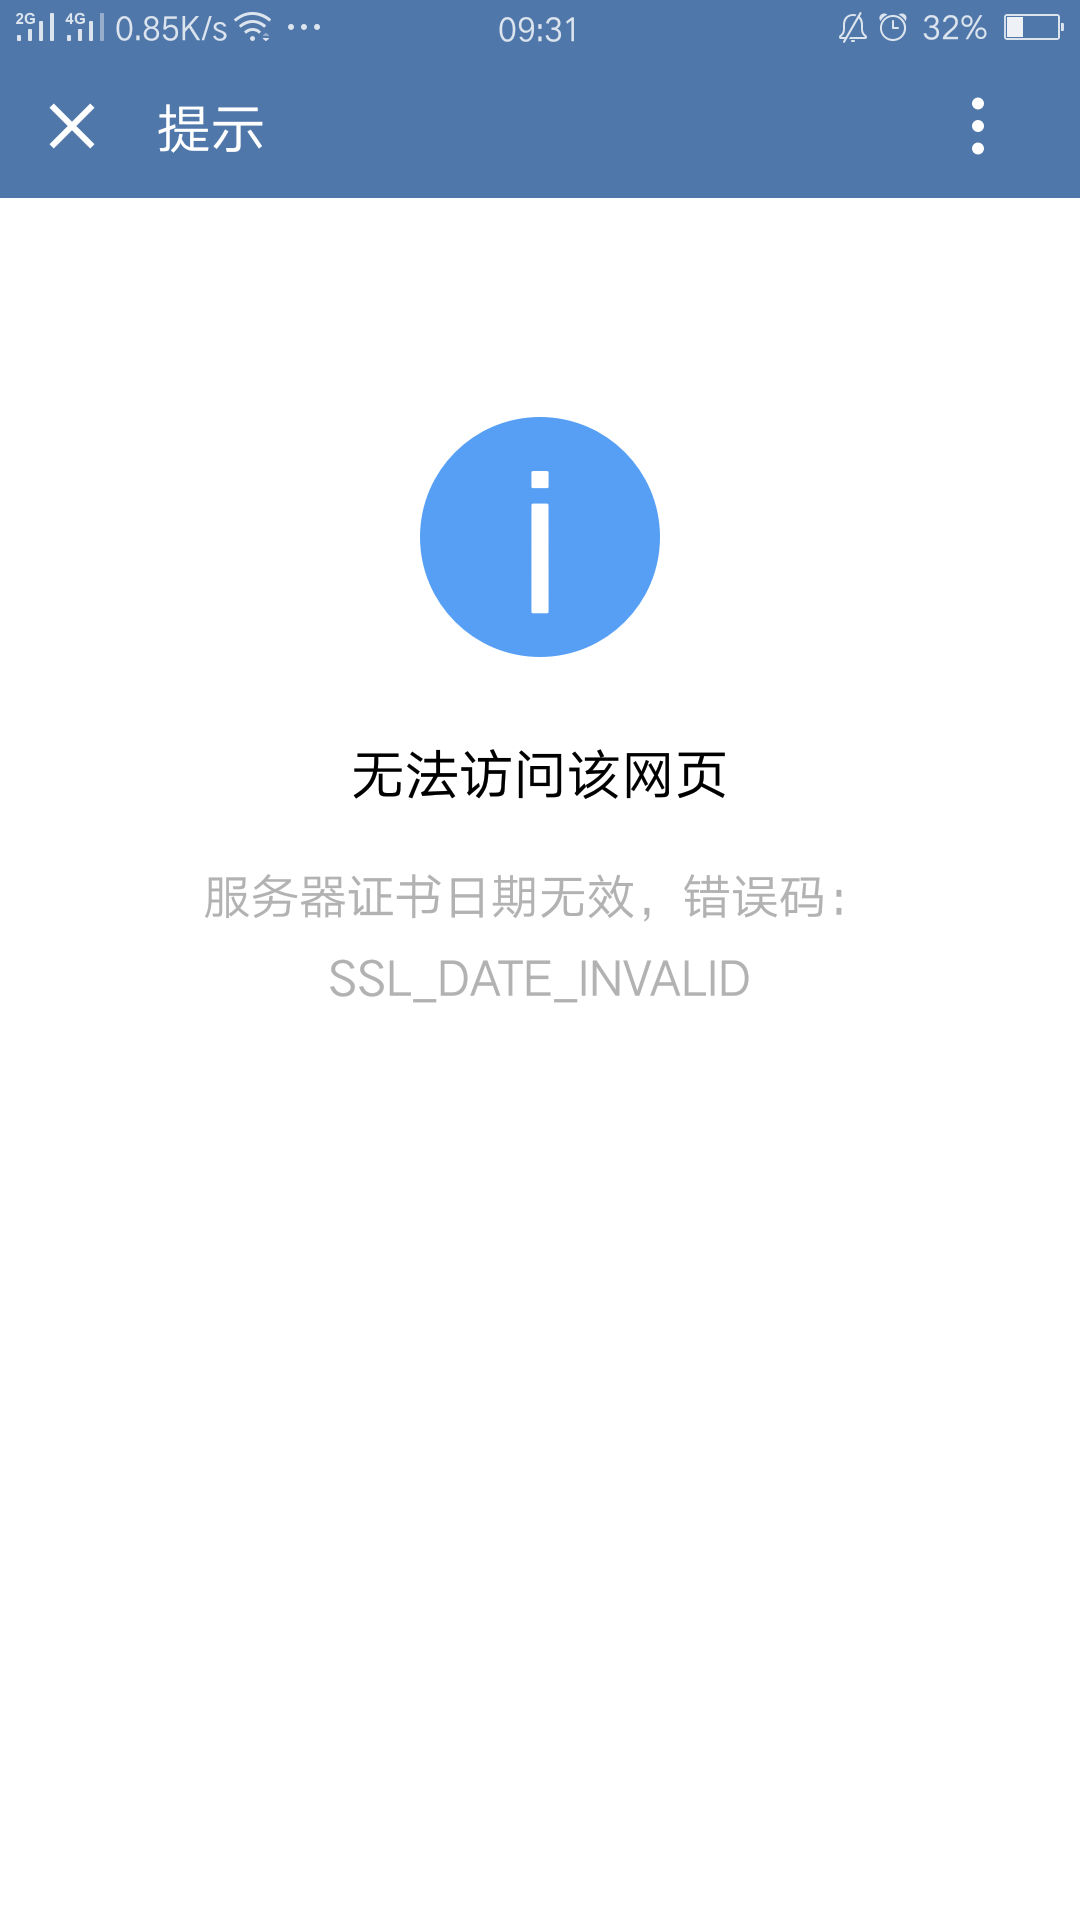 服务器证书日期无效  ssl